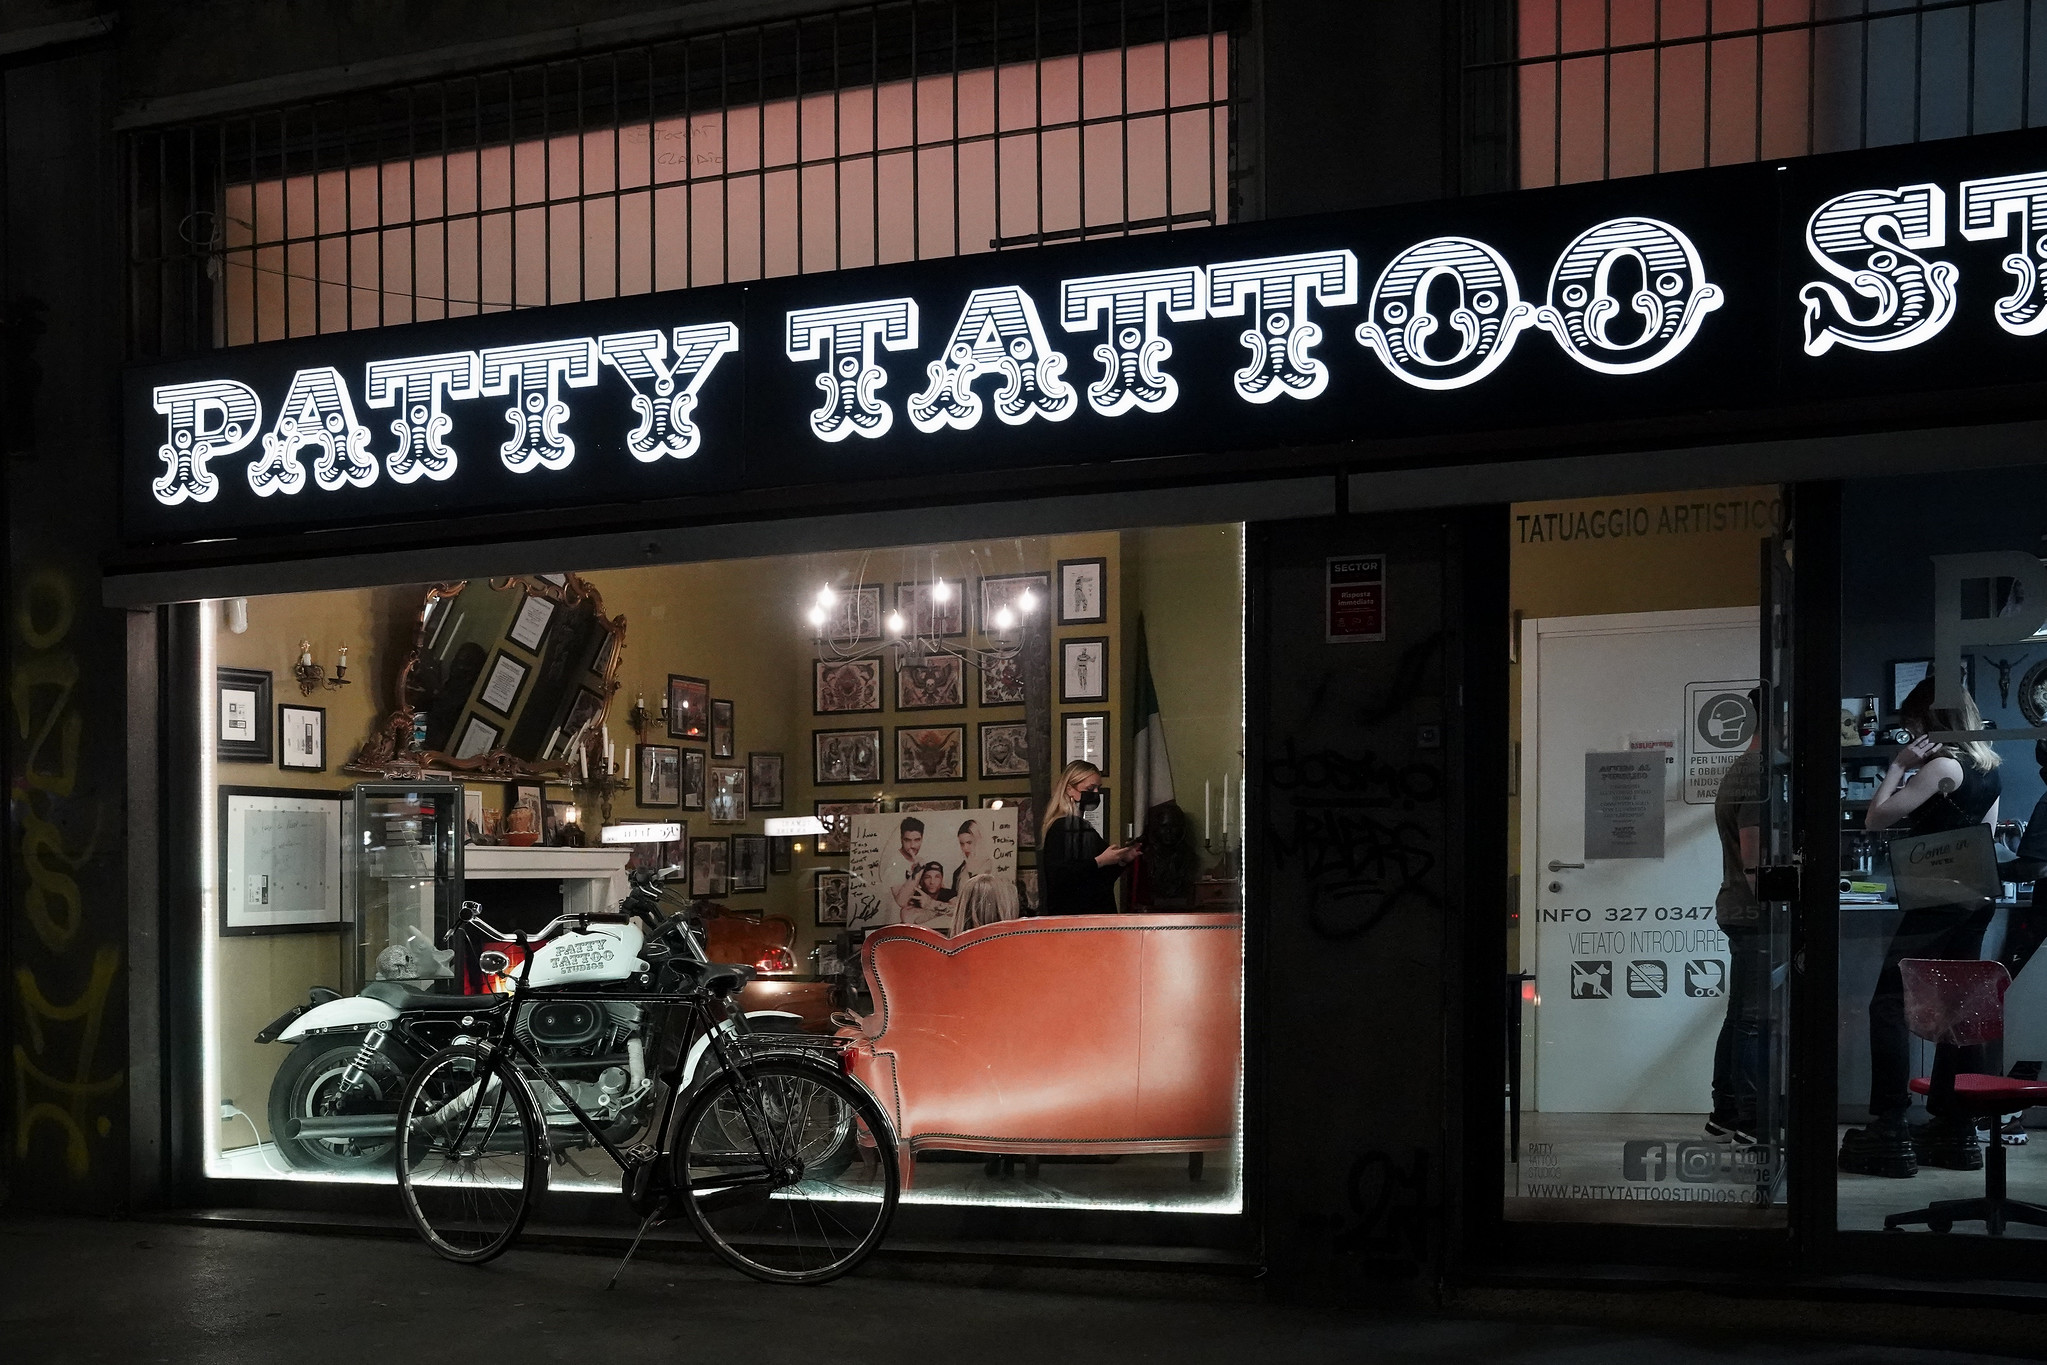 12 negozio tattoo_DSC7578